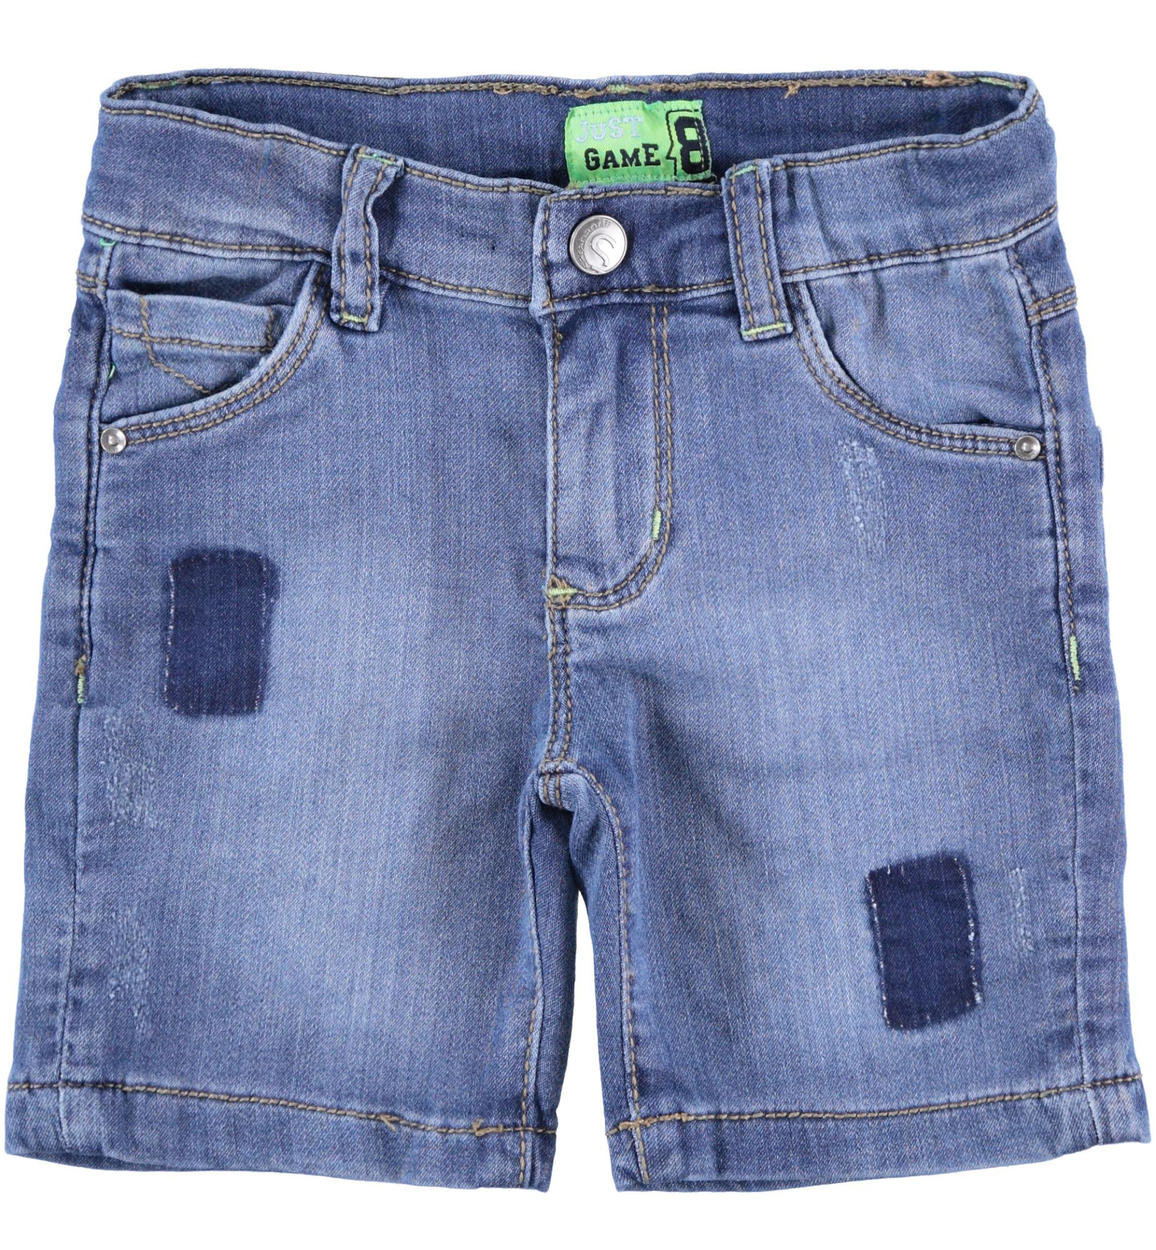 Pantalone corto in denim maglia con toppe per bambino da 6 mesi a 7 anni  Sarabanda - PANTALONI - 6-36 Mesi - Bambino